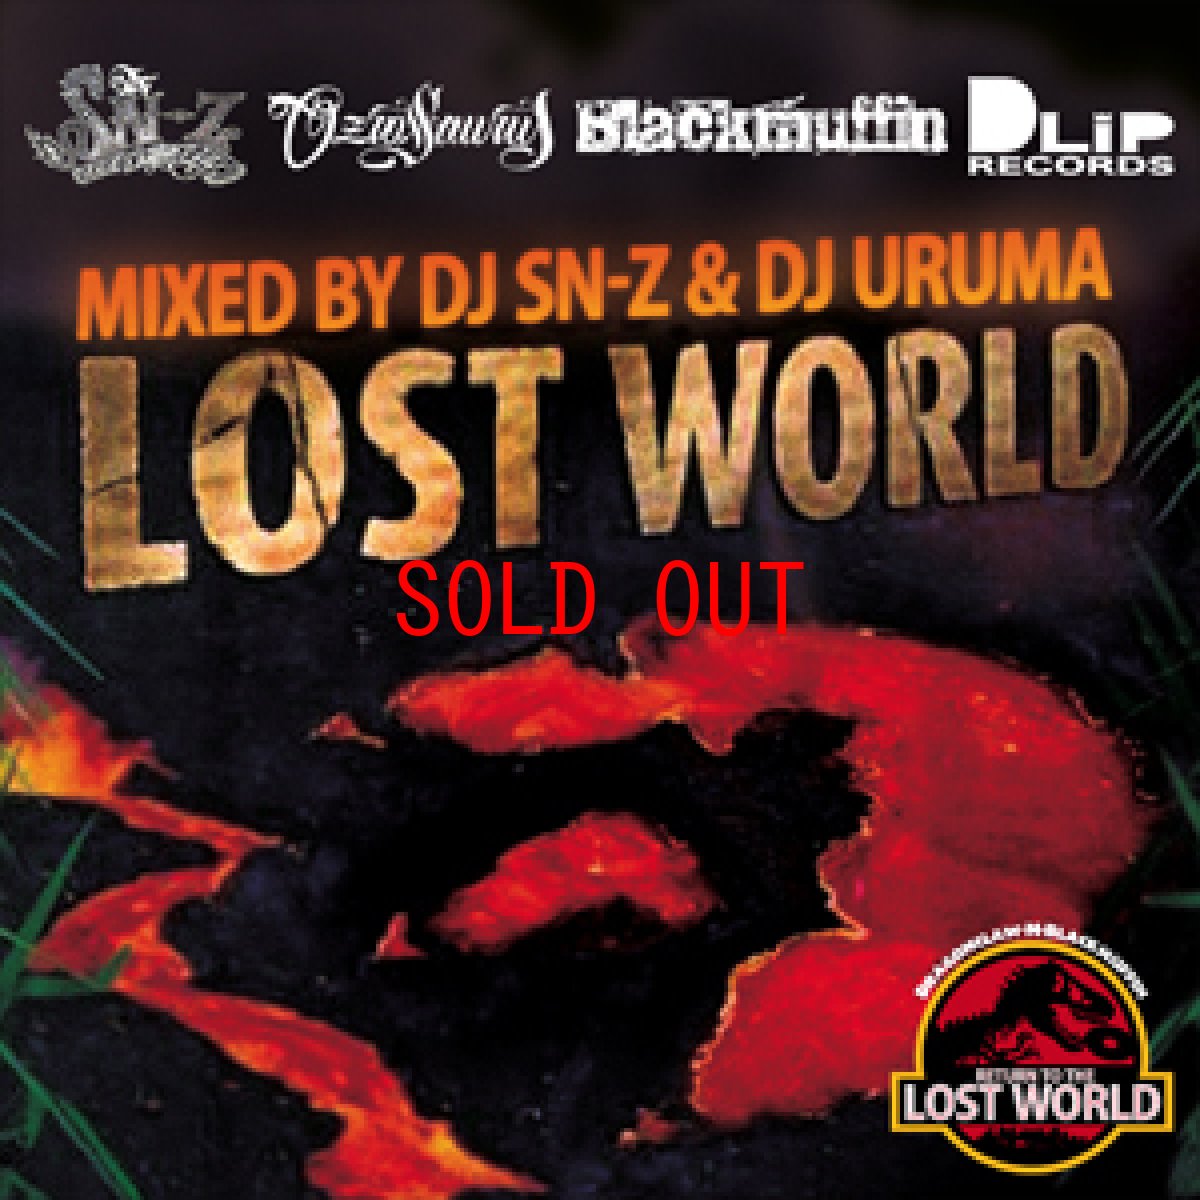 画像1: DJ URUMA & DJ SN-Z 『LOST WORLD』(2013) Dlip Records Mix CD ミックス ブラック マフィン ドリップ レコード (1)